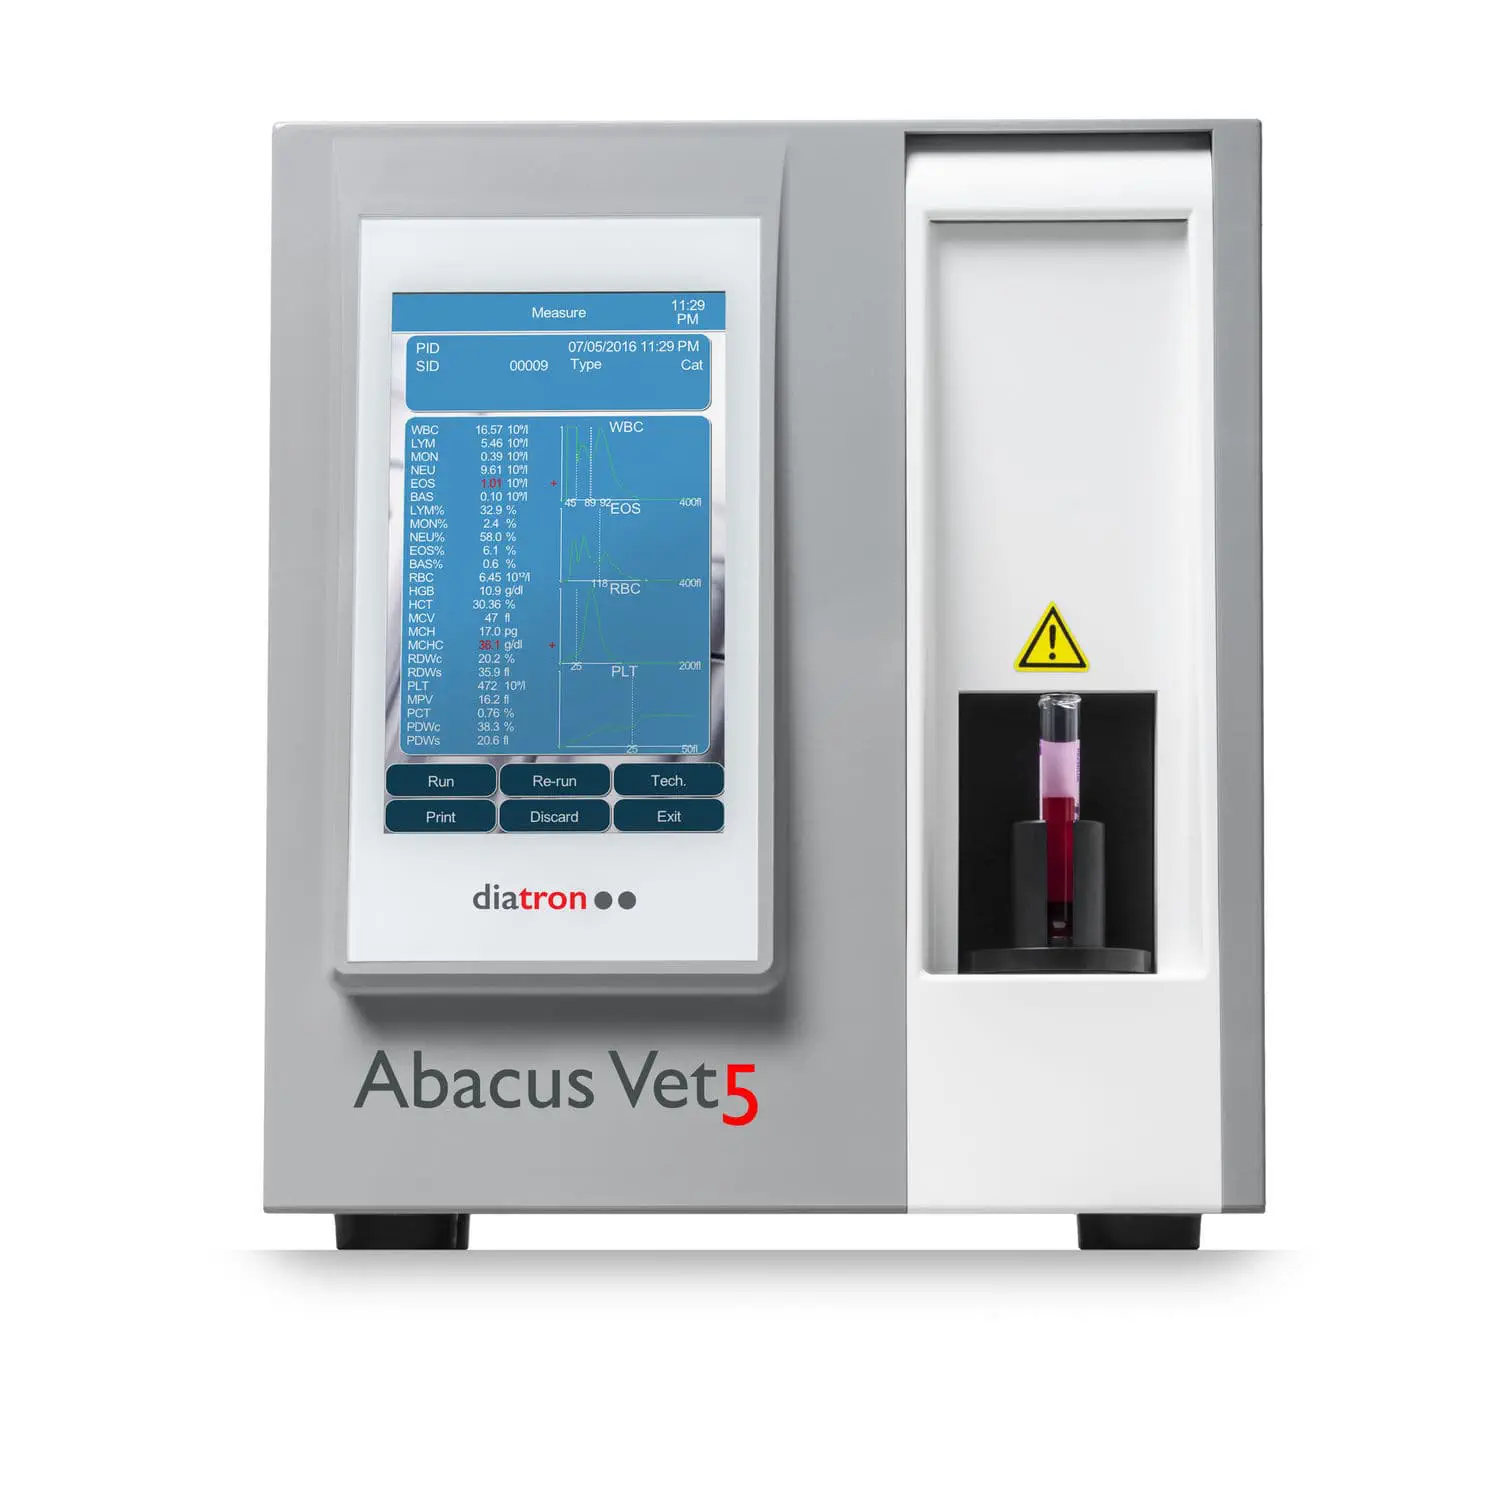 เครื่องตรวจวิเคราะห์ทางห้องปฏิบัติการโลหิตวิทยาสำหรับสัตว์ Veterinary hematology analyzer Abacus Vet5  Diatron